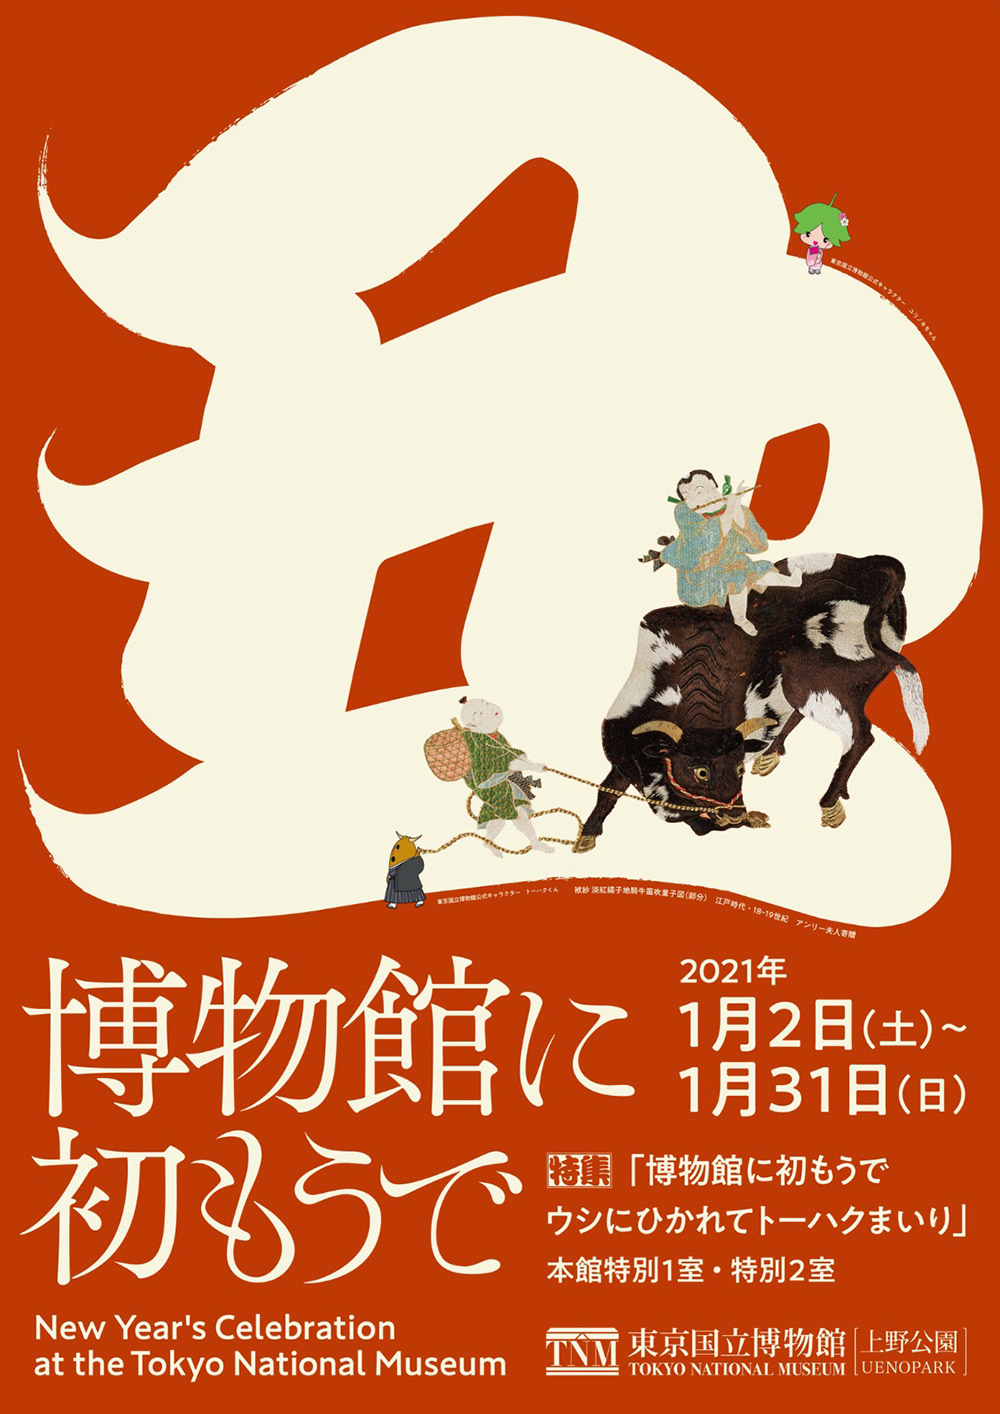 15张十分出色的日本展览海报